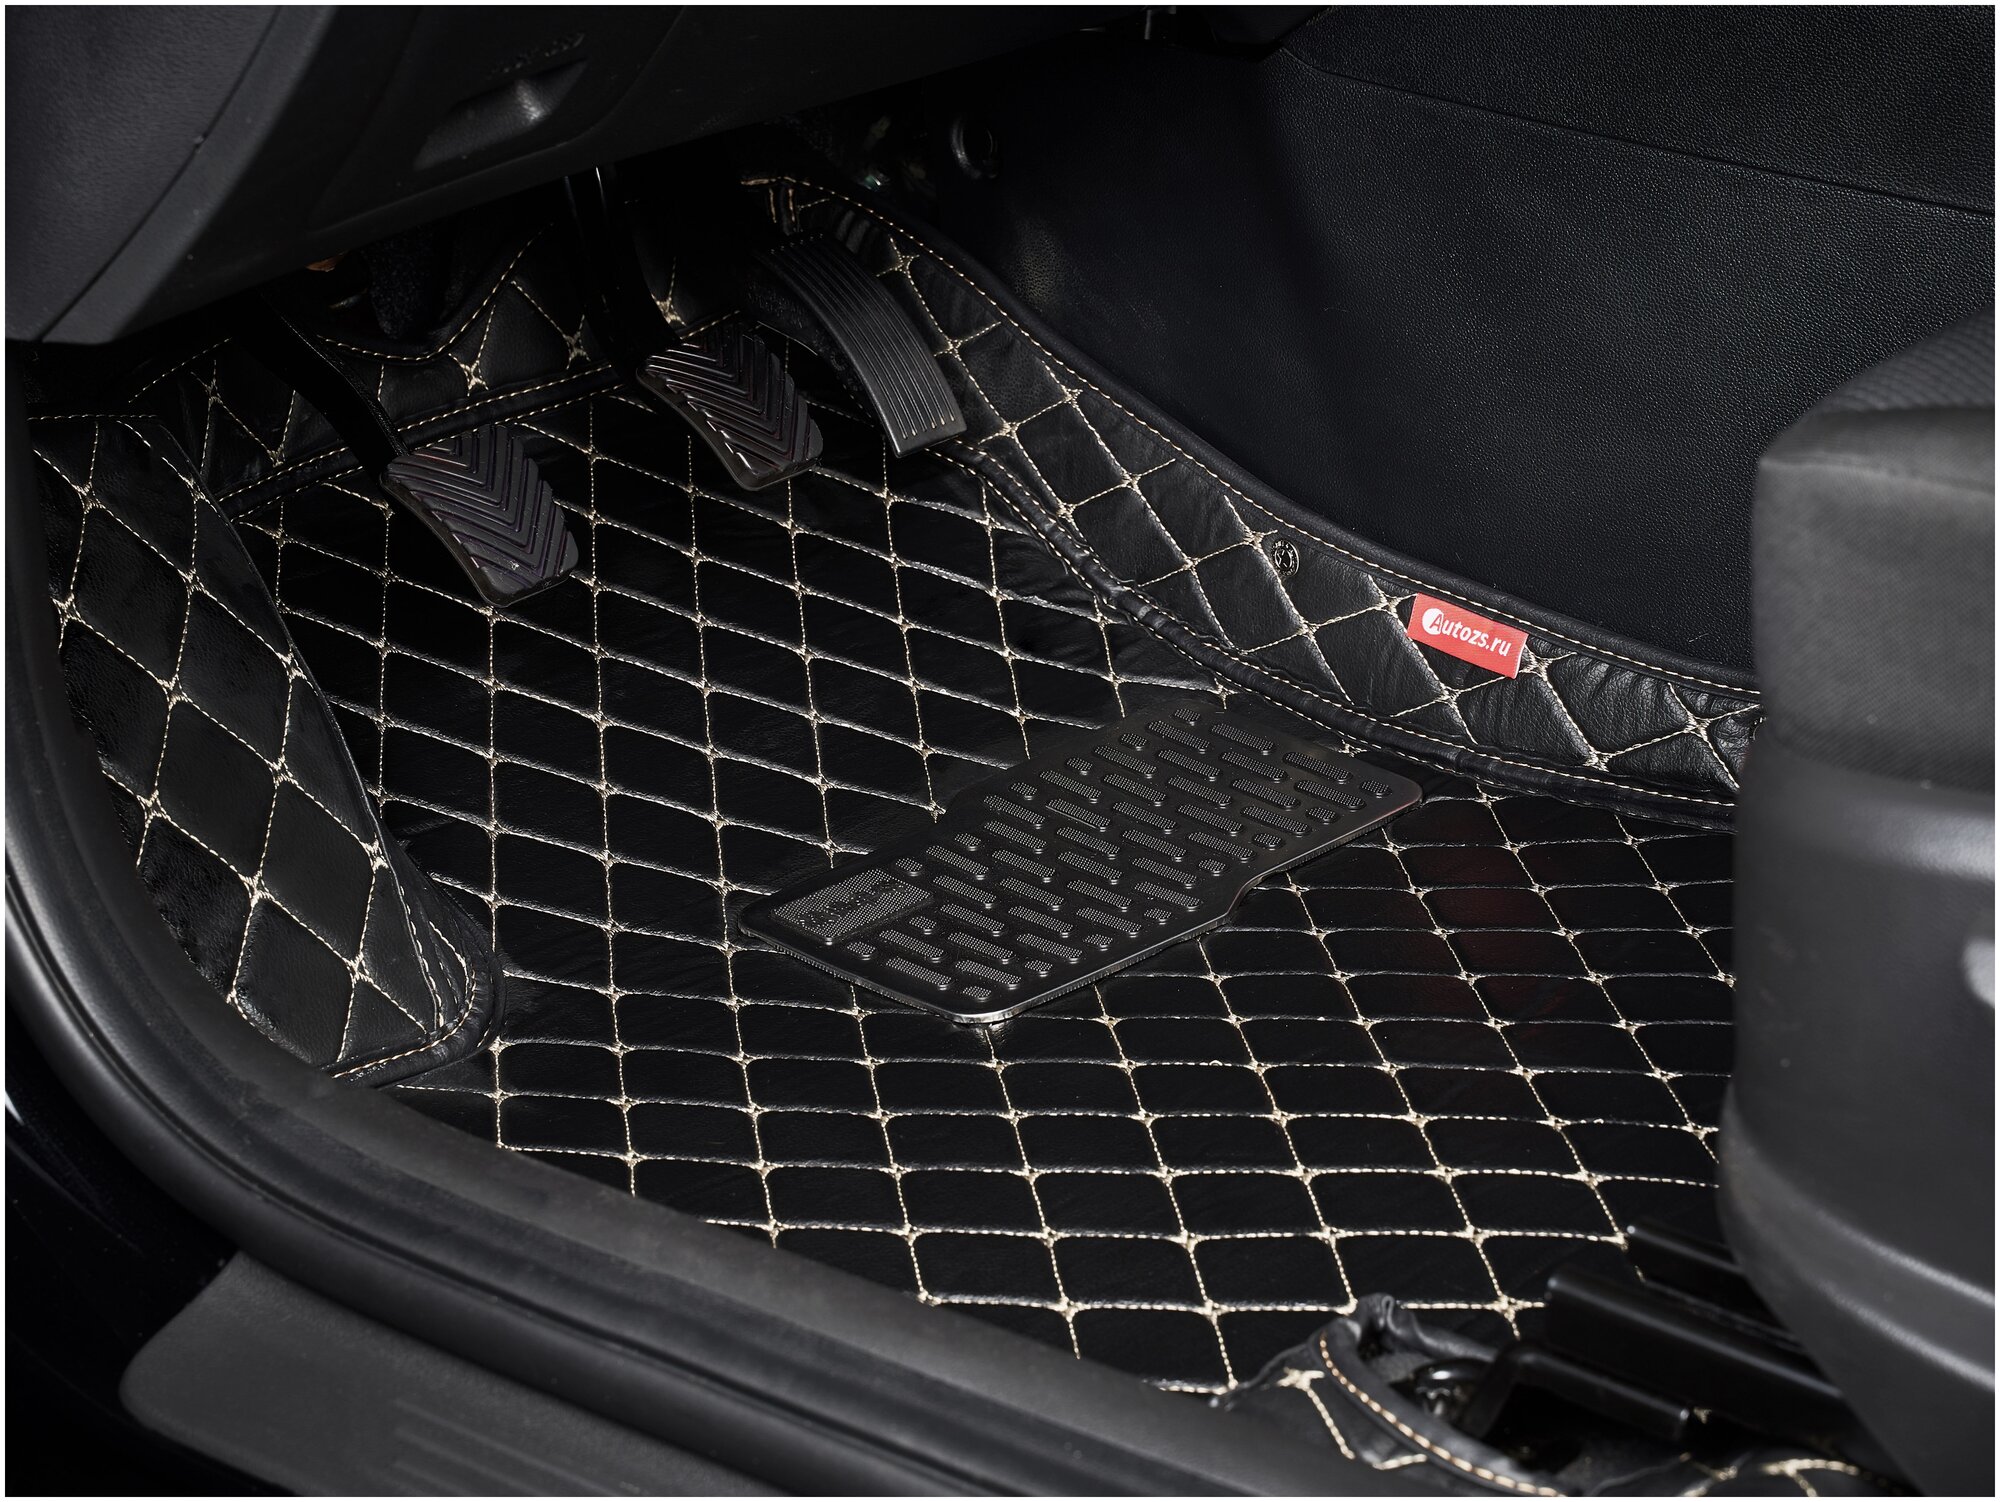 Кожаные 3D коврики Autozs Premium для Volkswagen Passat B8 (2014+) черные с бежевой строчкой / Фольксваген Пассат В8 (2014+) 3Д ковры в автомобиль